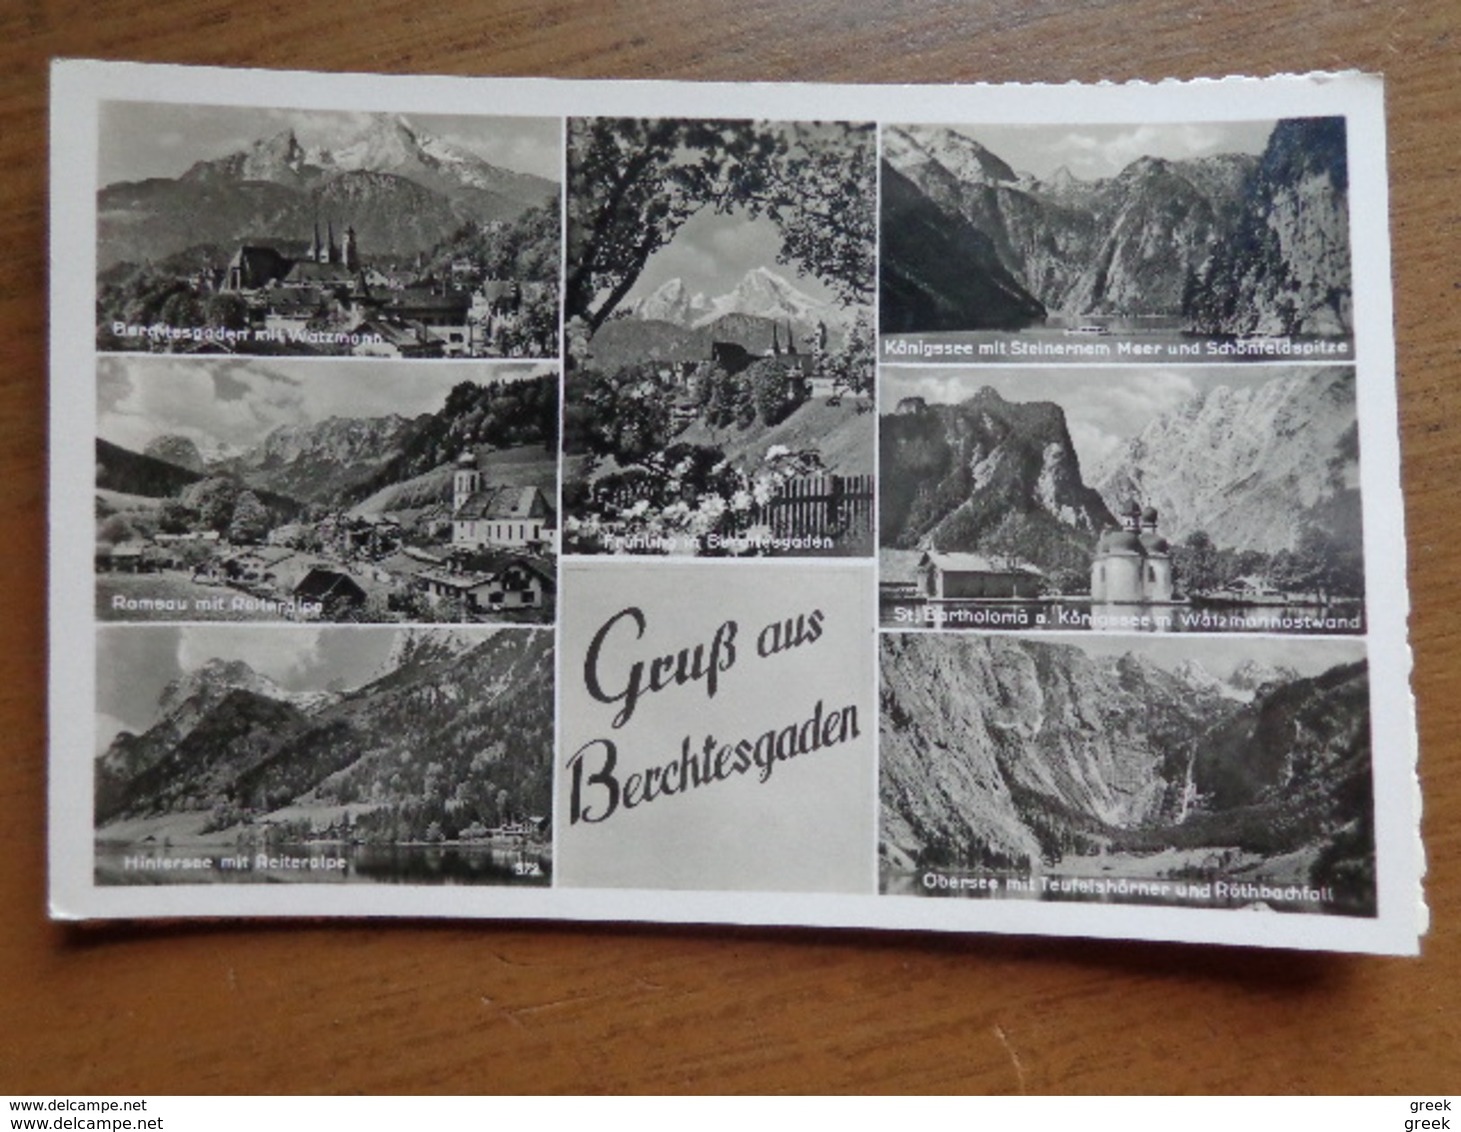 Doos postkaarten (2kg170) Zowel zwart wit als moderne kaarten, allerlei landen en thema's - zie foto's